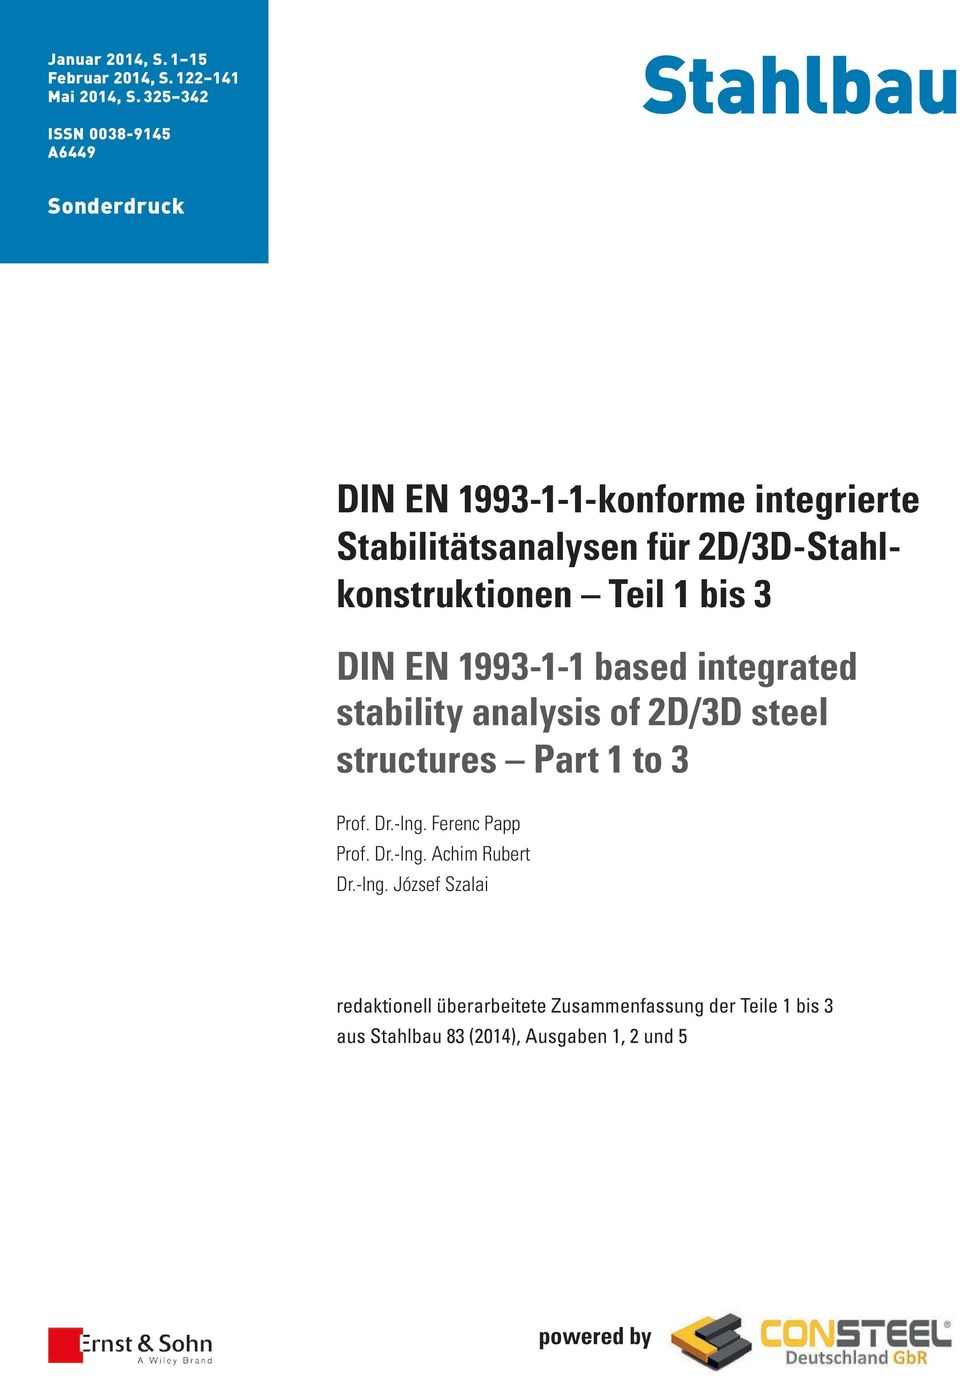 2D/3D-Stahlkonstruktionen Teil 1 bis 3 DIN EN 1993-1-1 based integrated stability analysis of 2D/3D steel structures Part 1